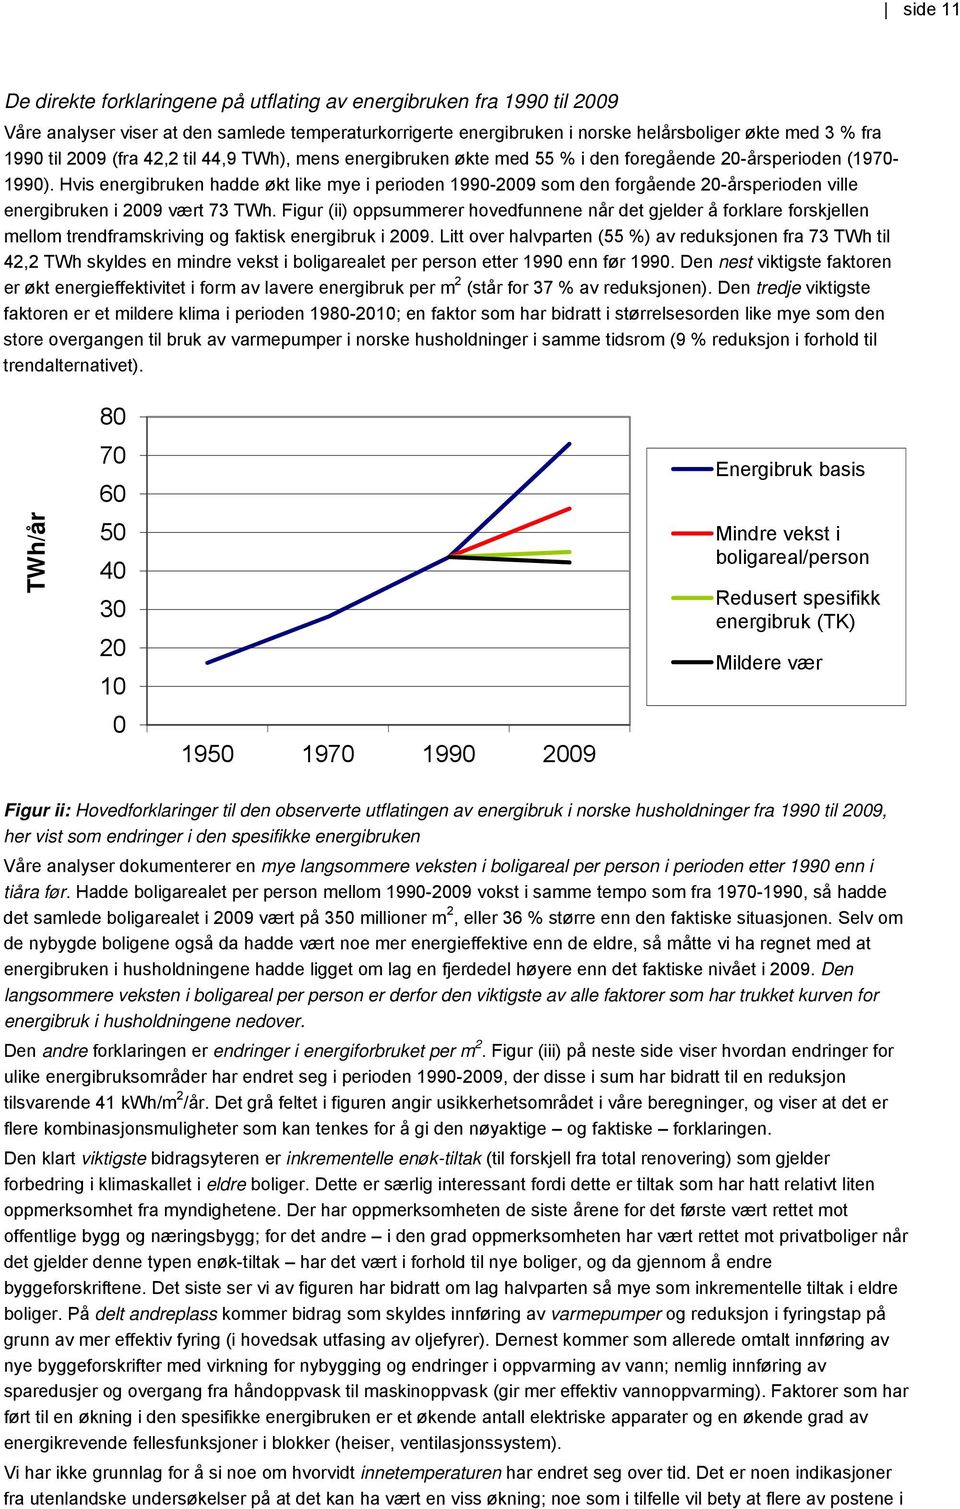 Hvis energibruken hadde økt like mye i perioden 1990-2009 som den forgående 20-årsperioden ville energibruken i 2009 vært 73 TWh.